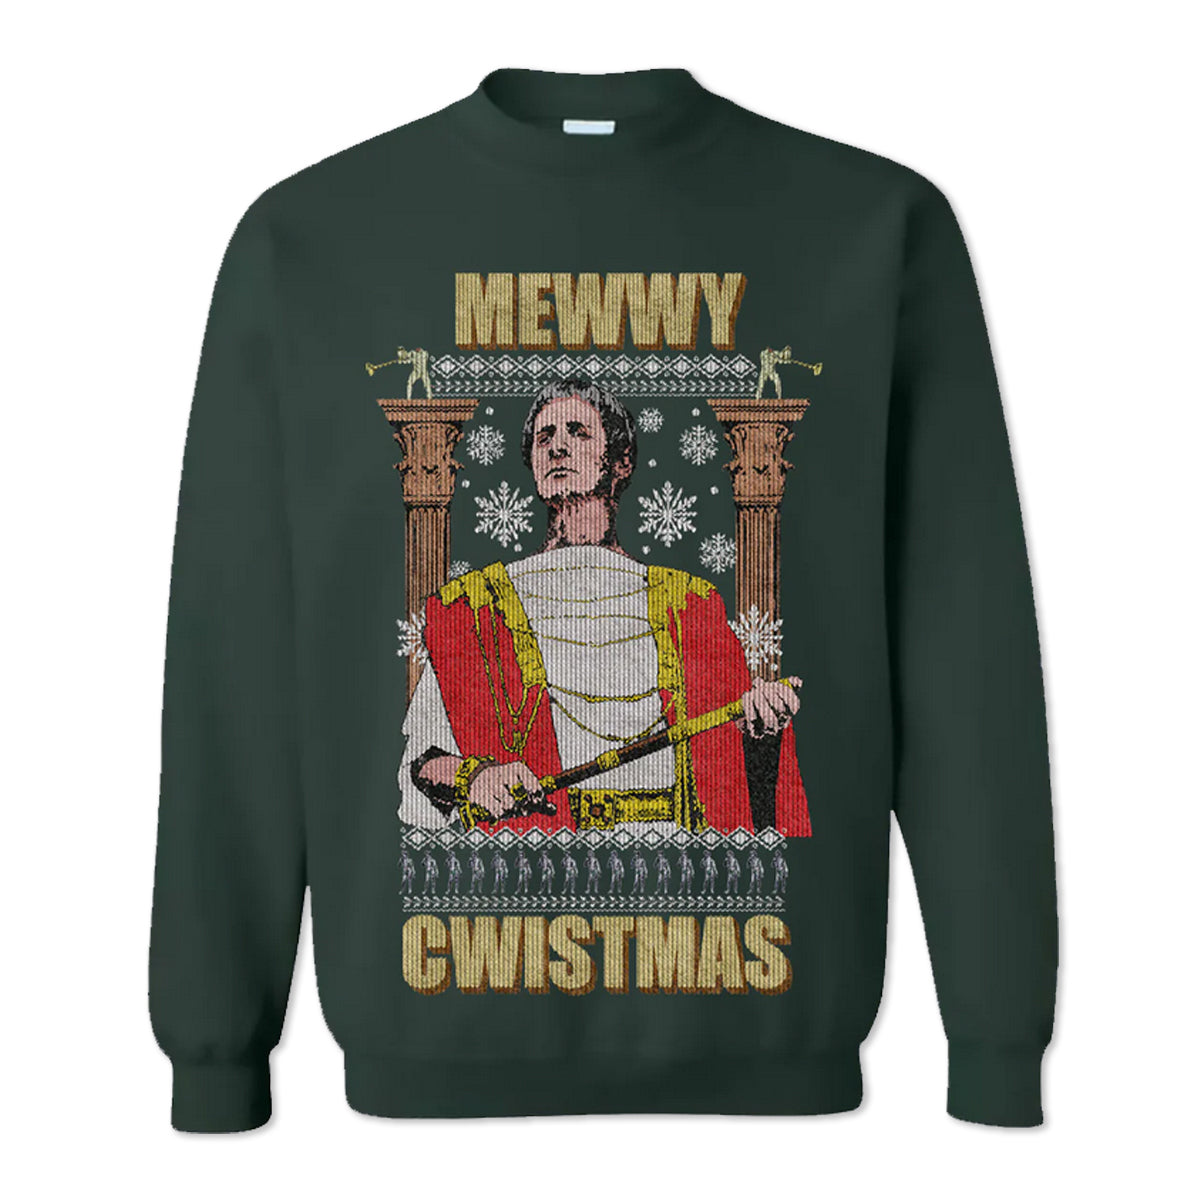 Monty Python ‘Mewwy Cwistmas’ Sweatshirt Green